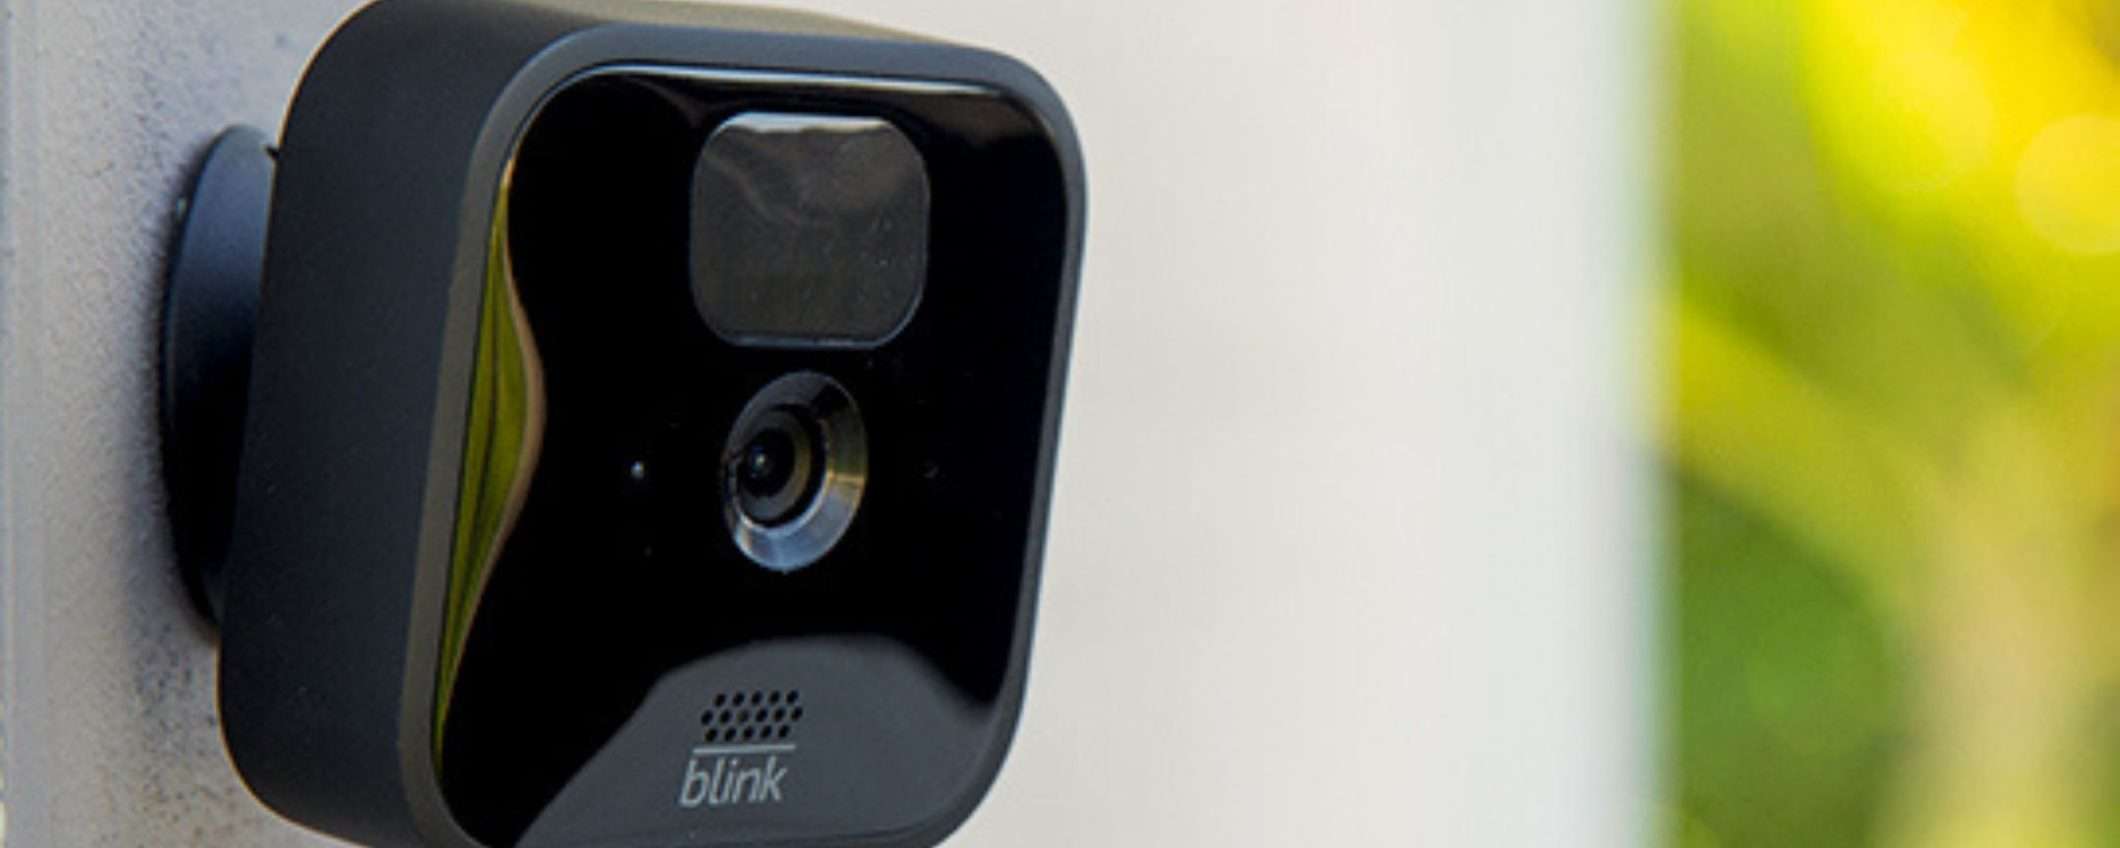 CASA sempre SICURA con la videocamera di sorveglianza Blink Outdoor (-46%)